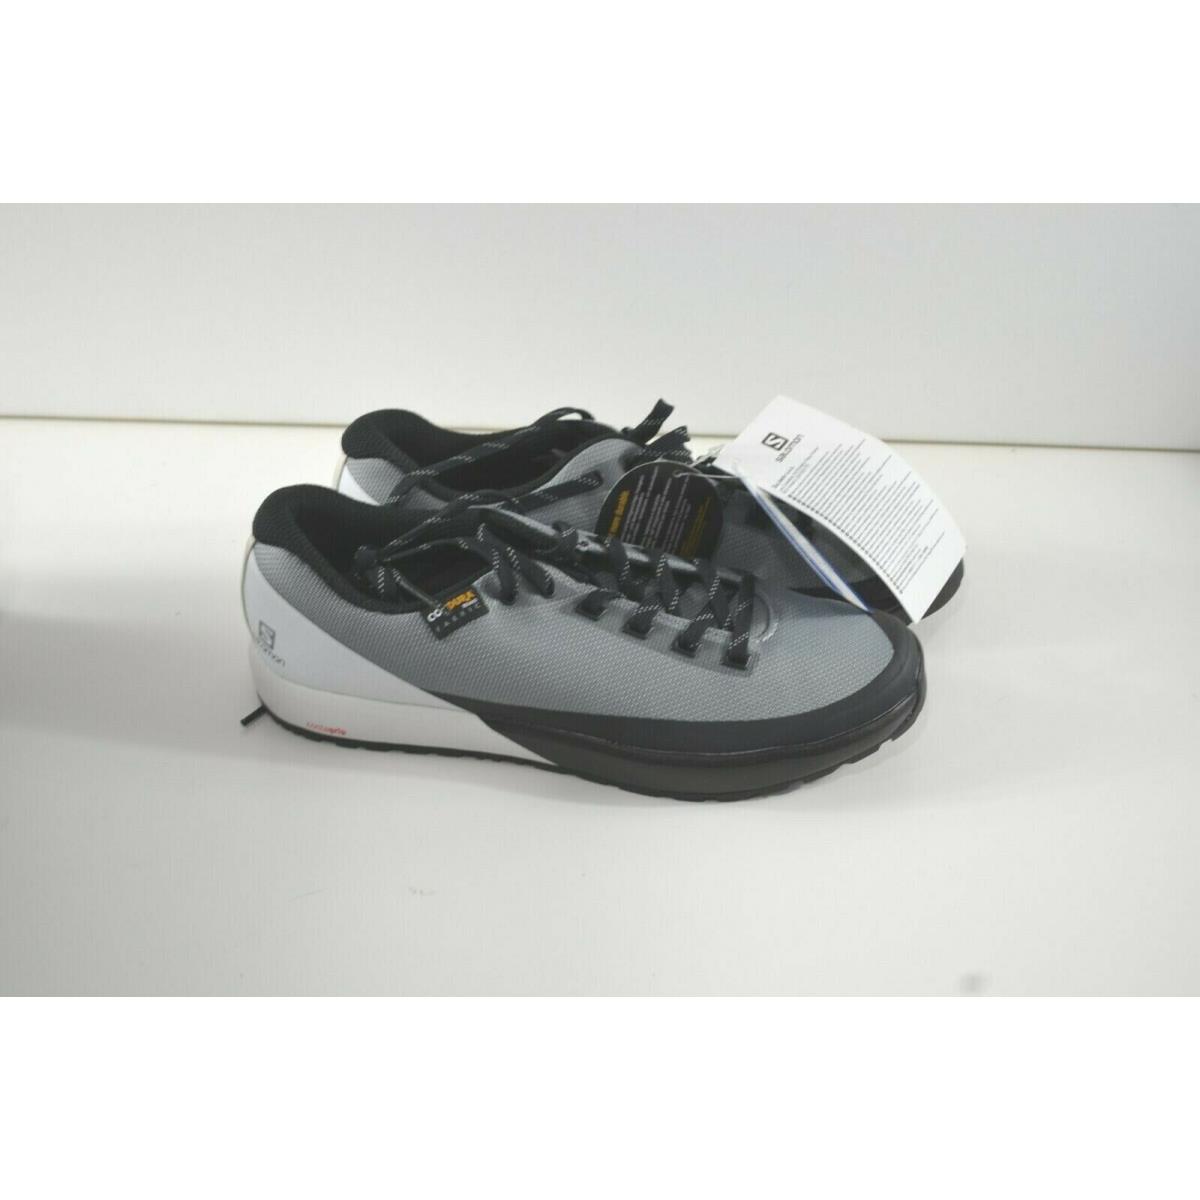 Salomon Acro Hiking Athletic Shoes Men`s 7.5 US Cordura Grey Black White